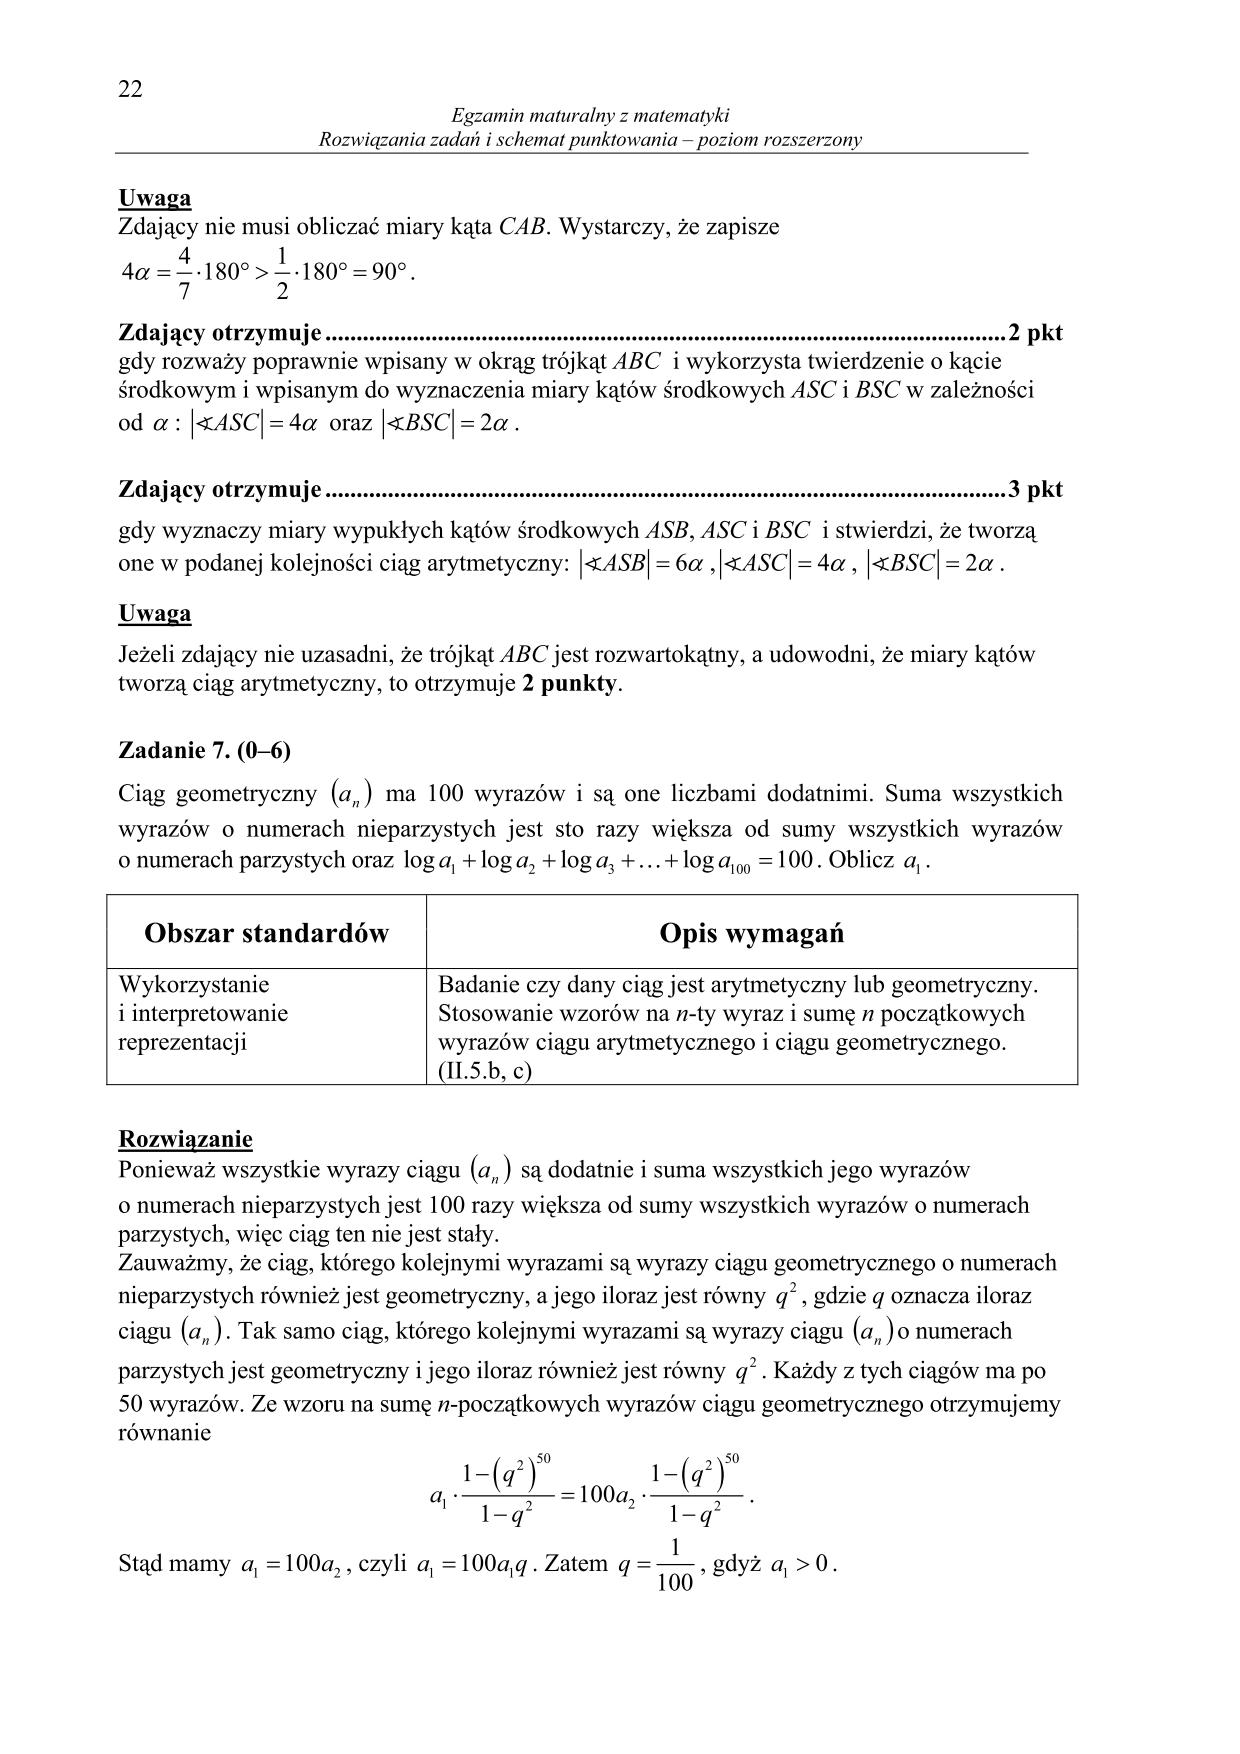 odpowiedzi-matematyka-poziom-rozszerzony-matura-2014-22